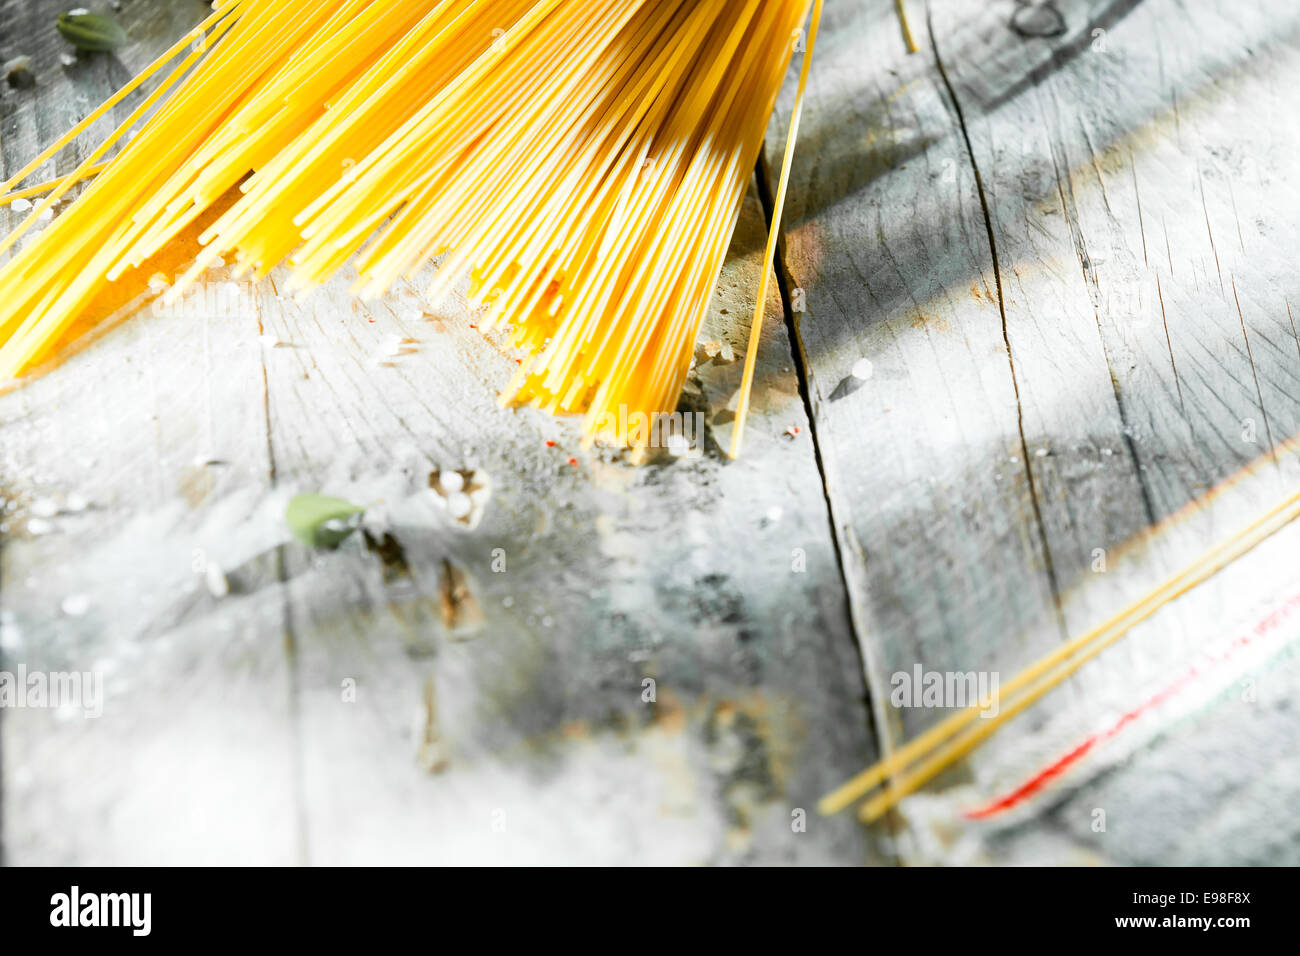 Fideos spaghetti italiano hechas de masa de trigo durm secos dispuestos en la esquina de una mesa de madera sucio en ángulo con copyspace Foto de stock